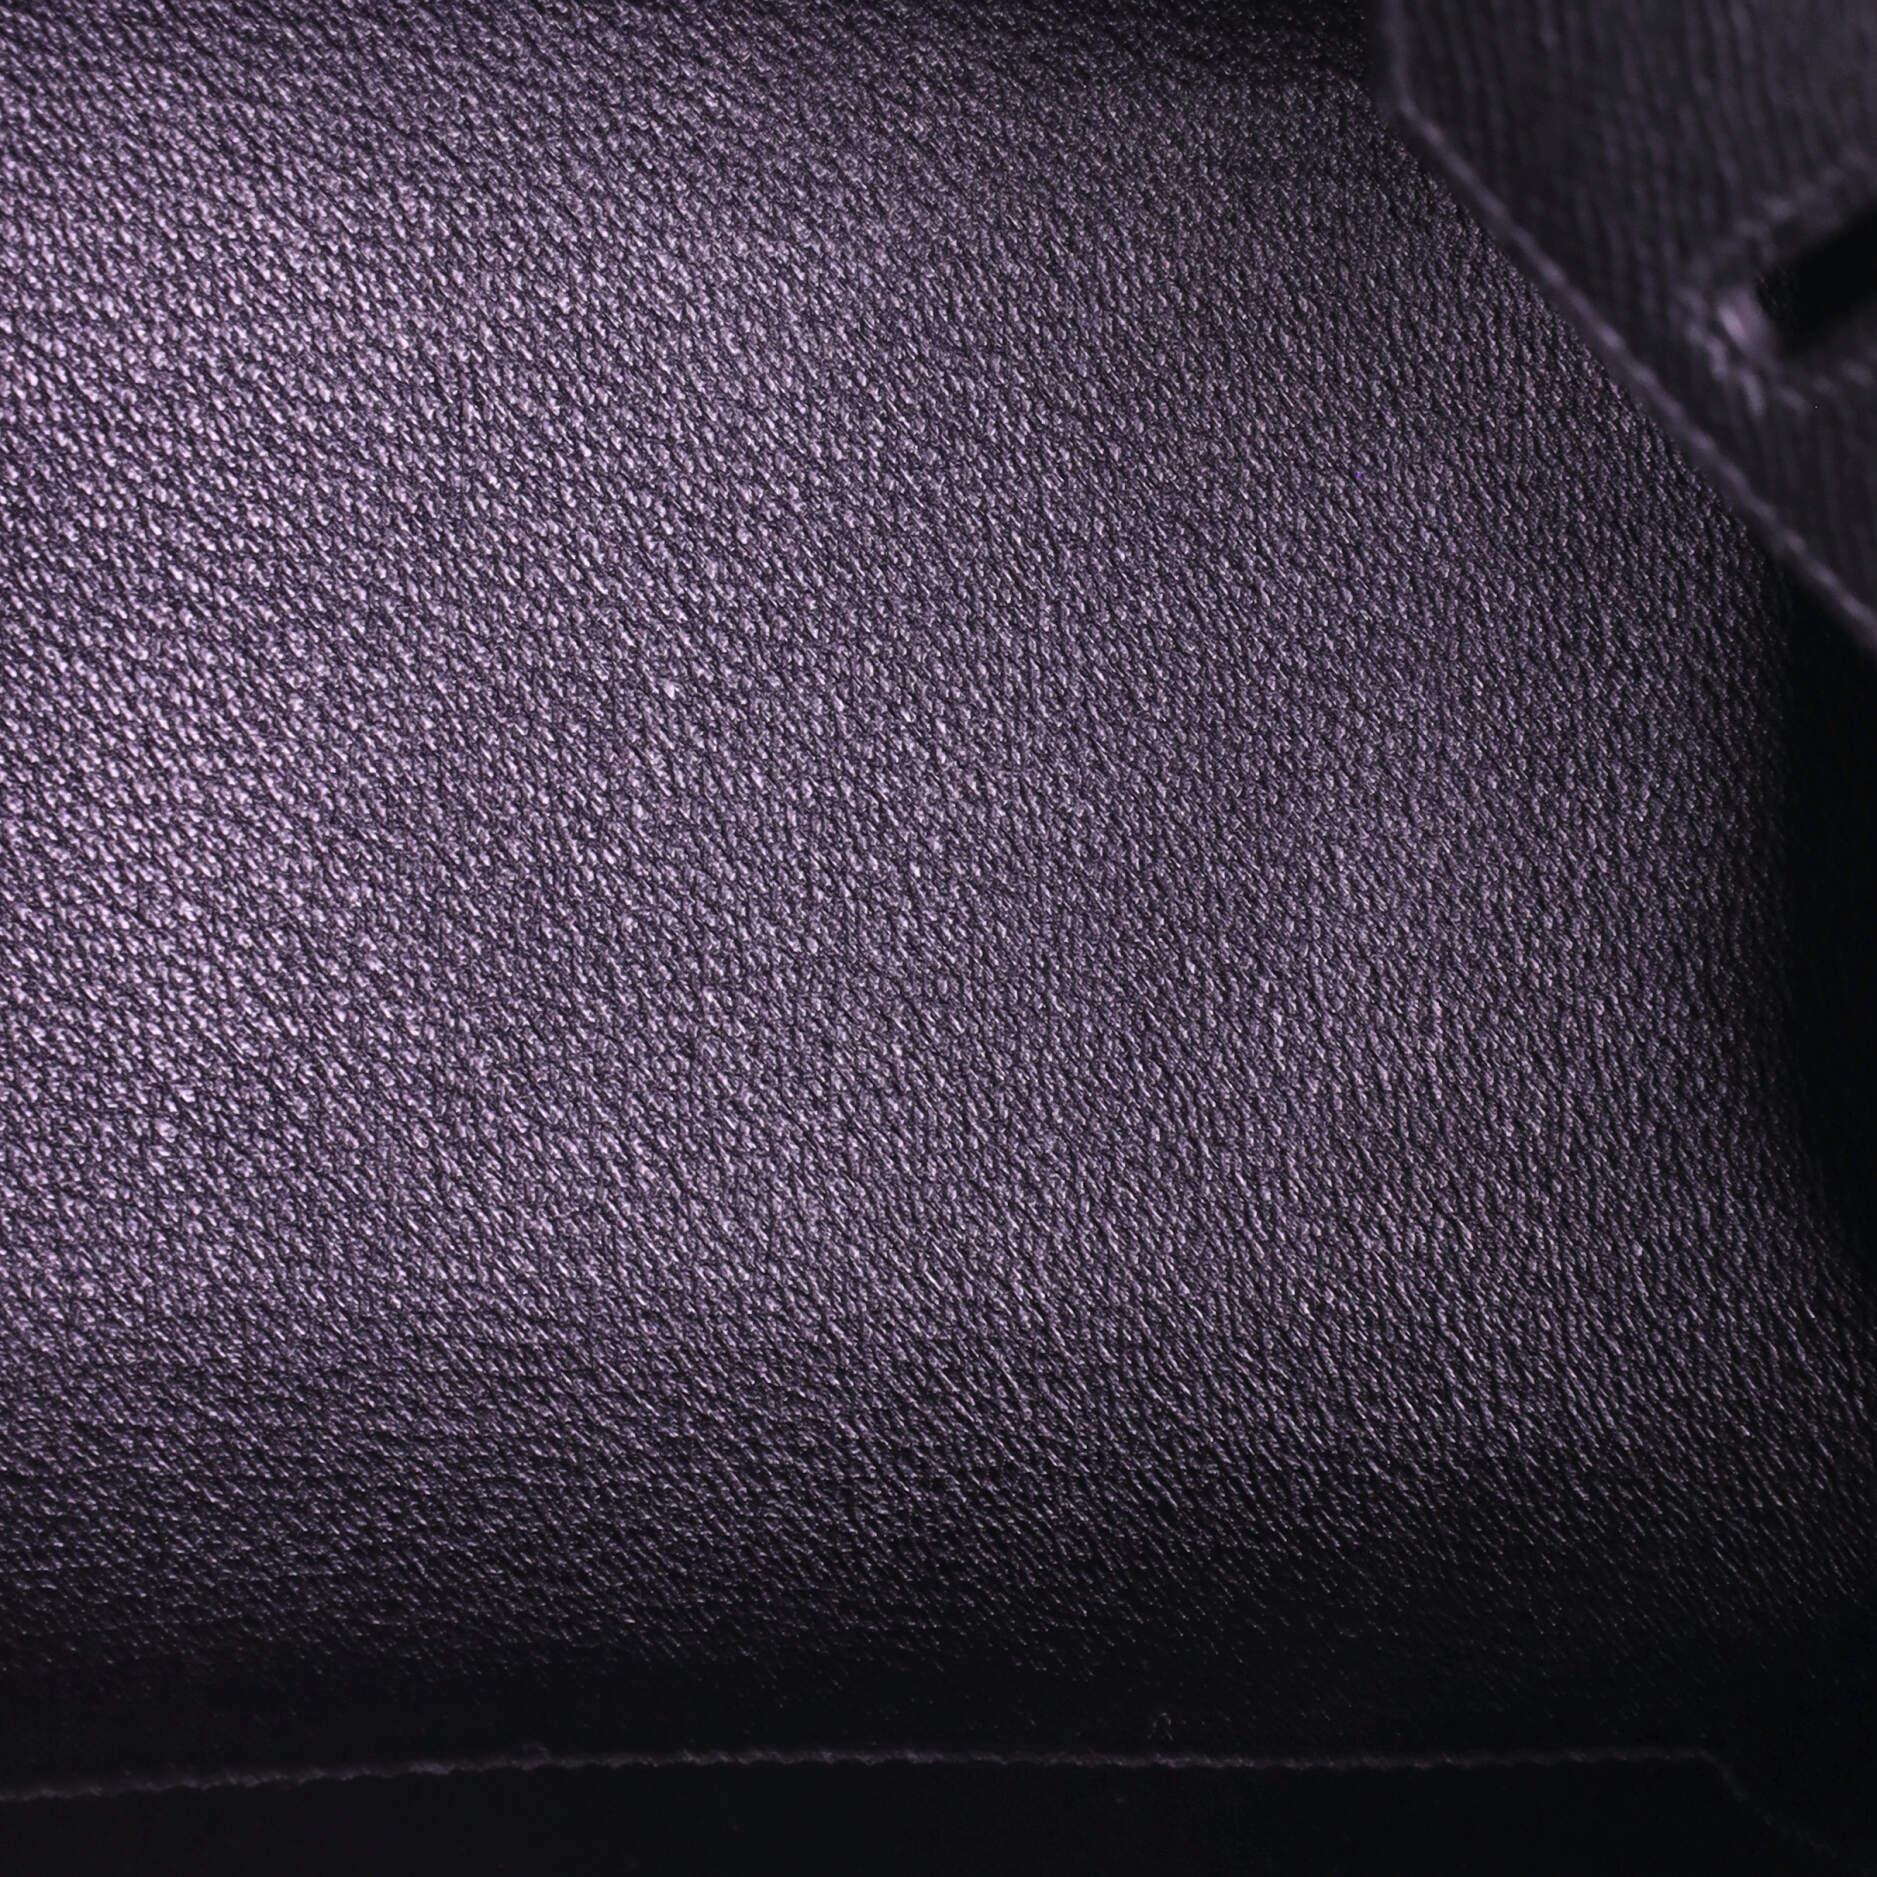 Hermes Birkin Sellier Bag Noir Epsom with Gold Hardware 25 1